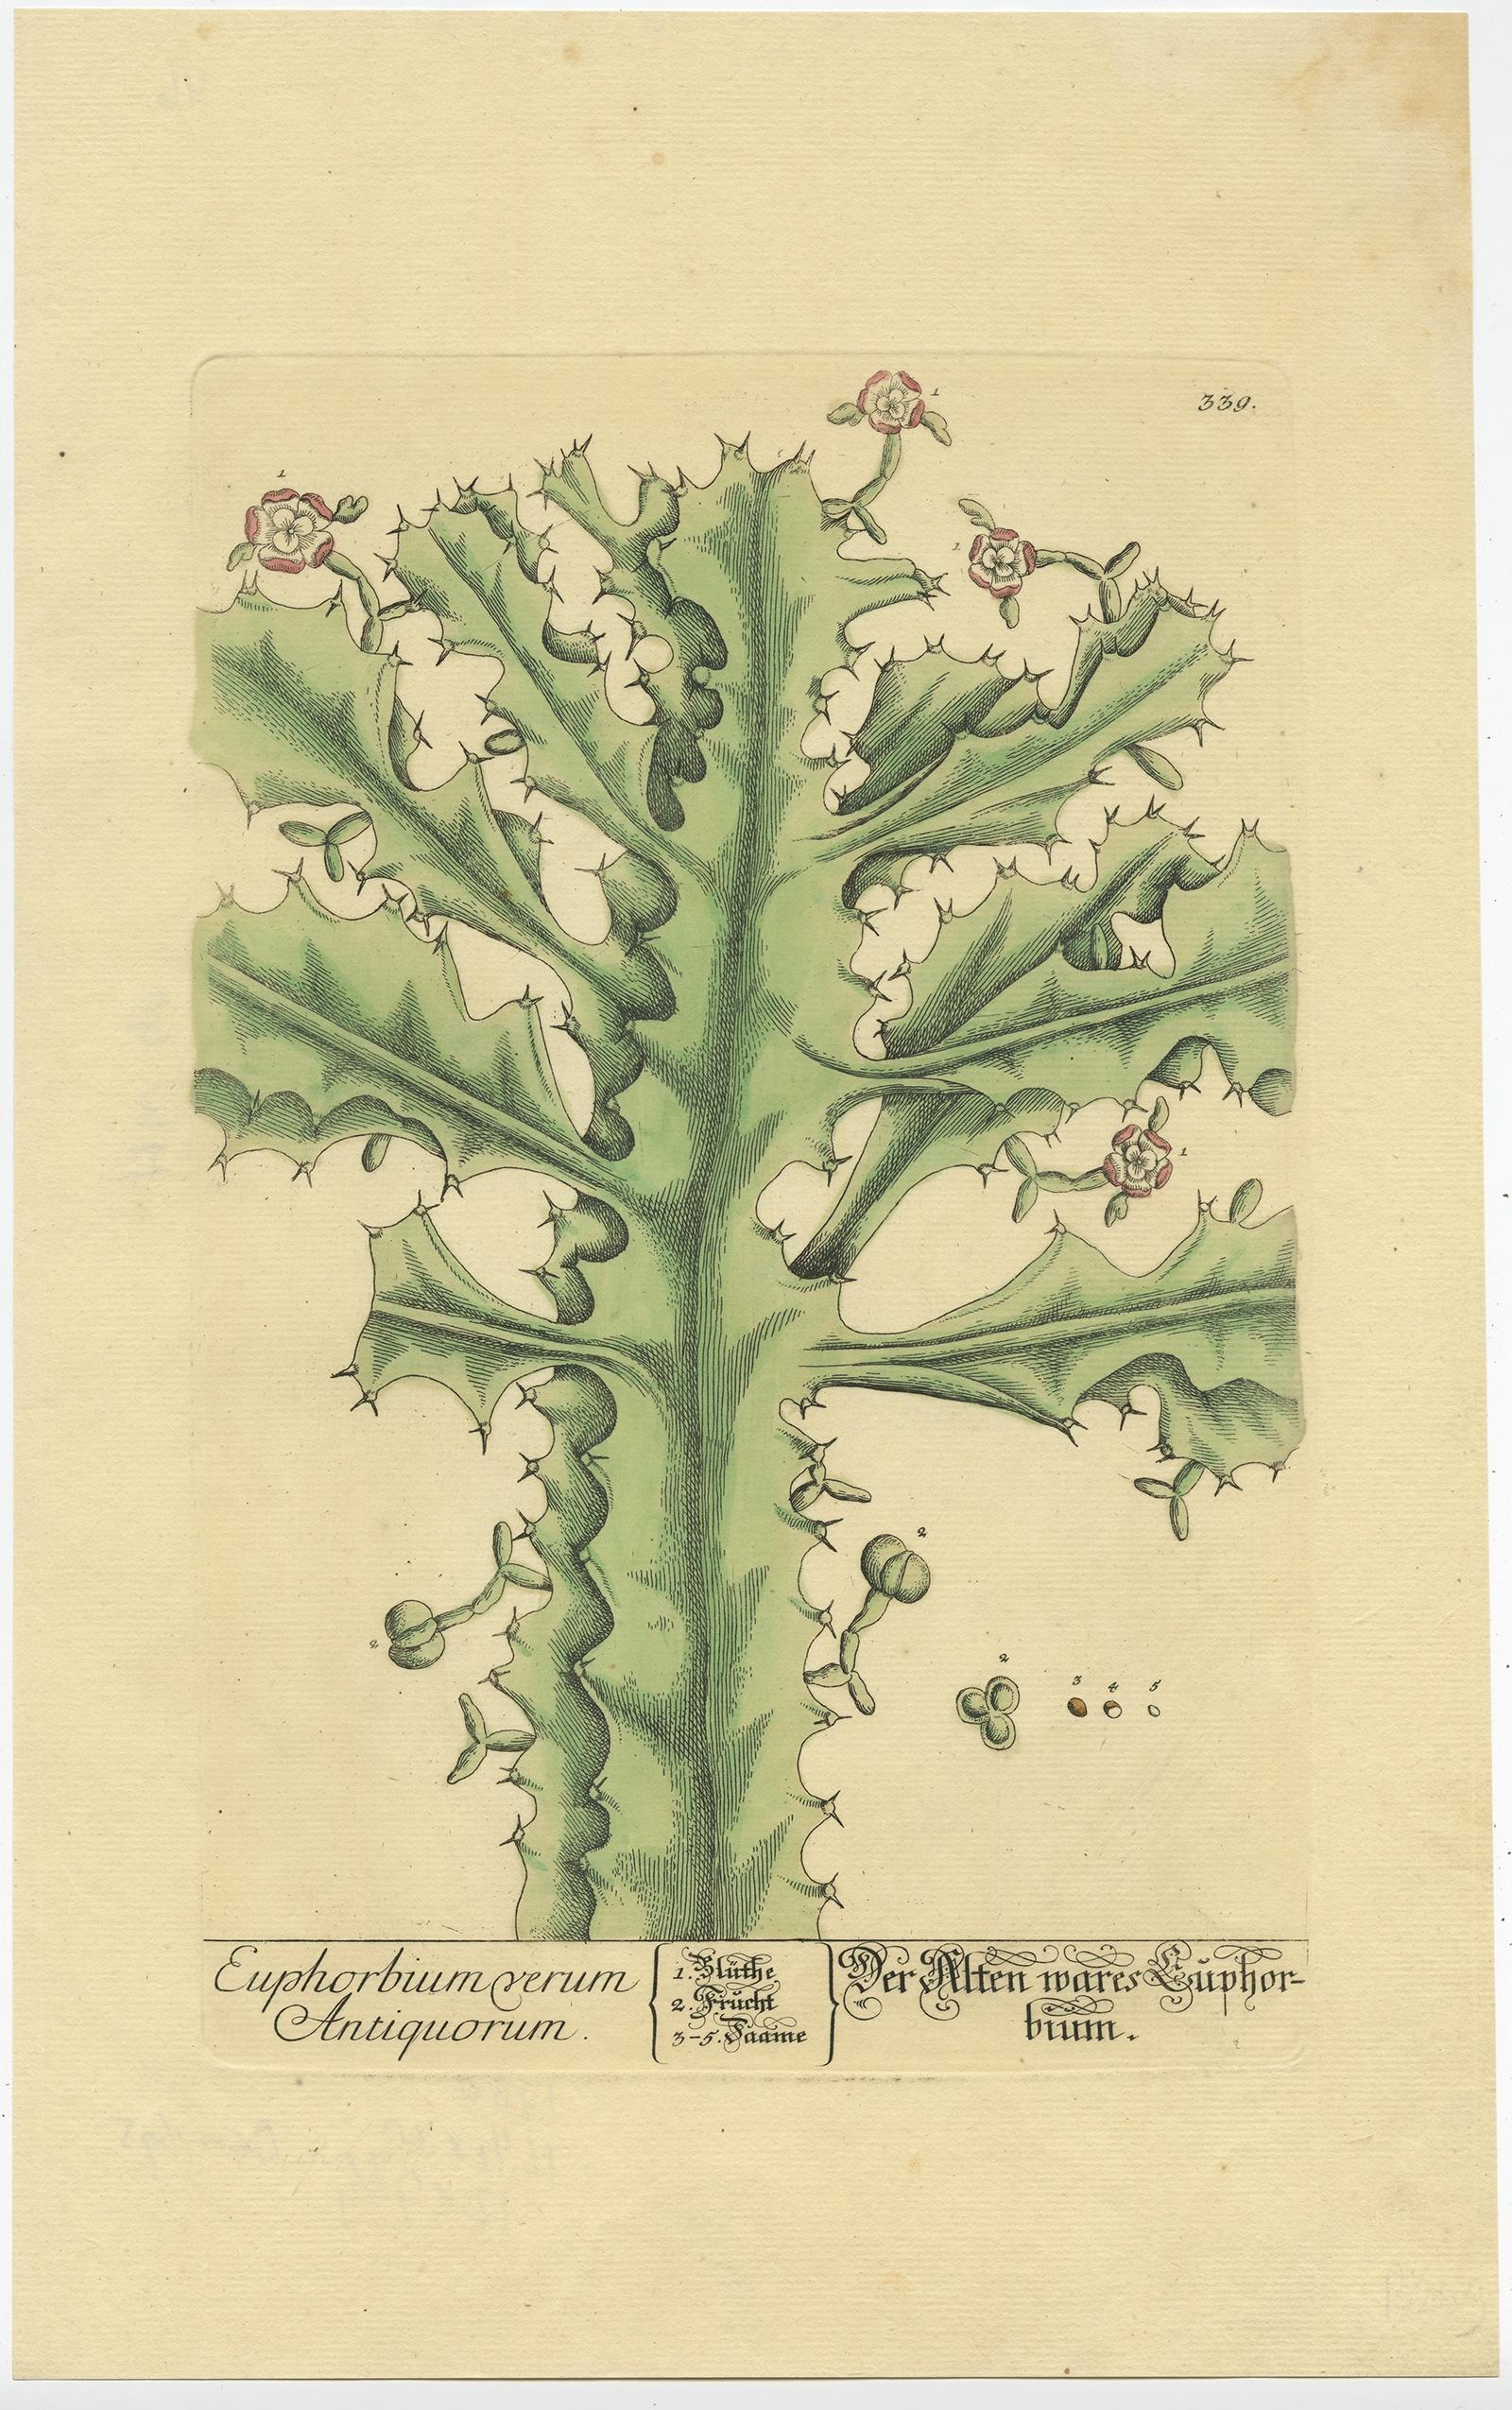 Antique print, titled: 'Euphorbium verum Antiquorum' - This original old antique print shows the true euphorbium. Source unknown, to be determined.

The True Euphorbium; Euphorbium verum Antiquorum

London: John Nourse, 1737.

Botanical print.